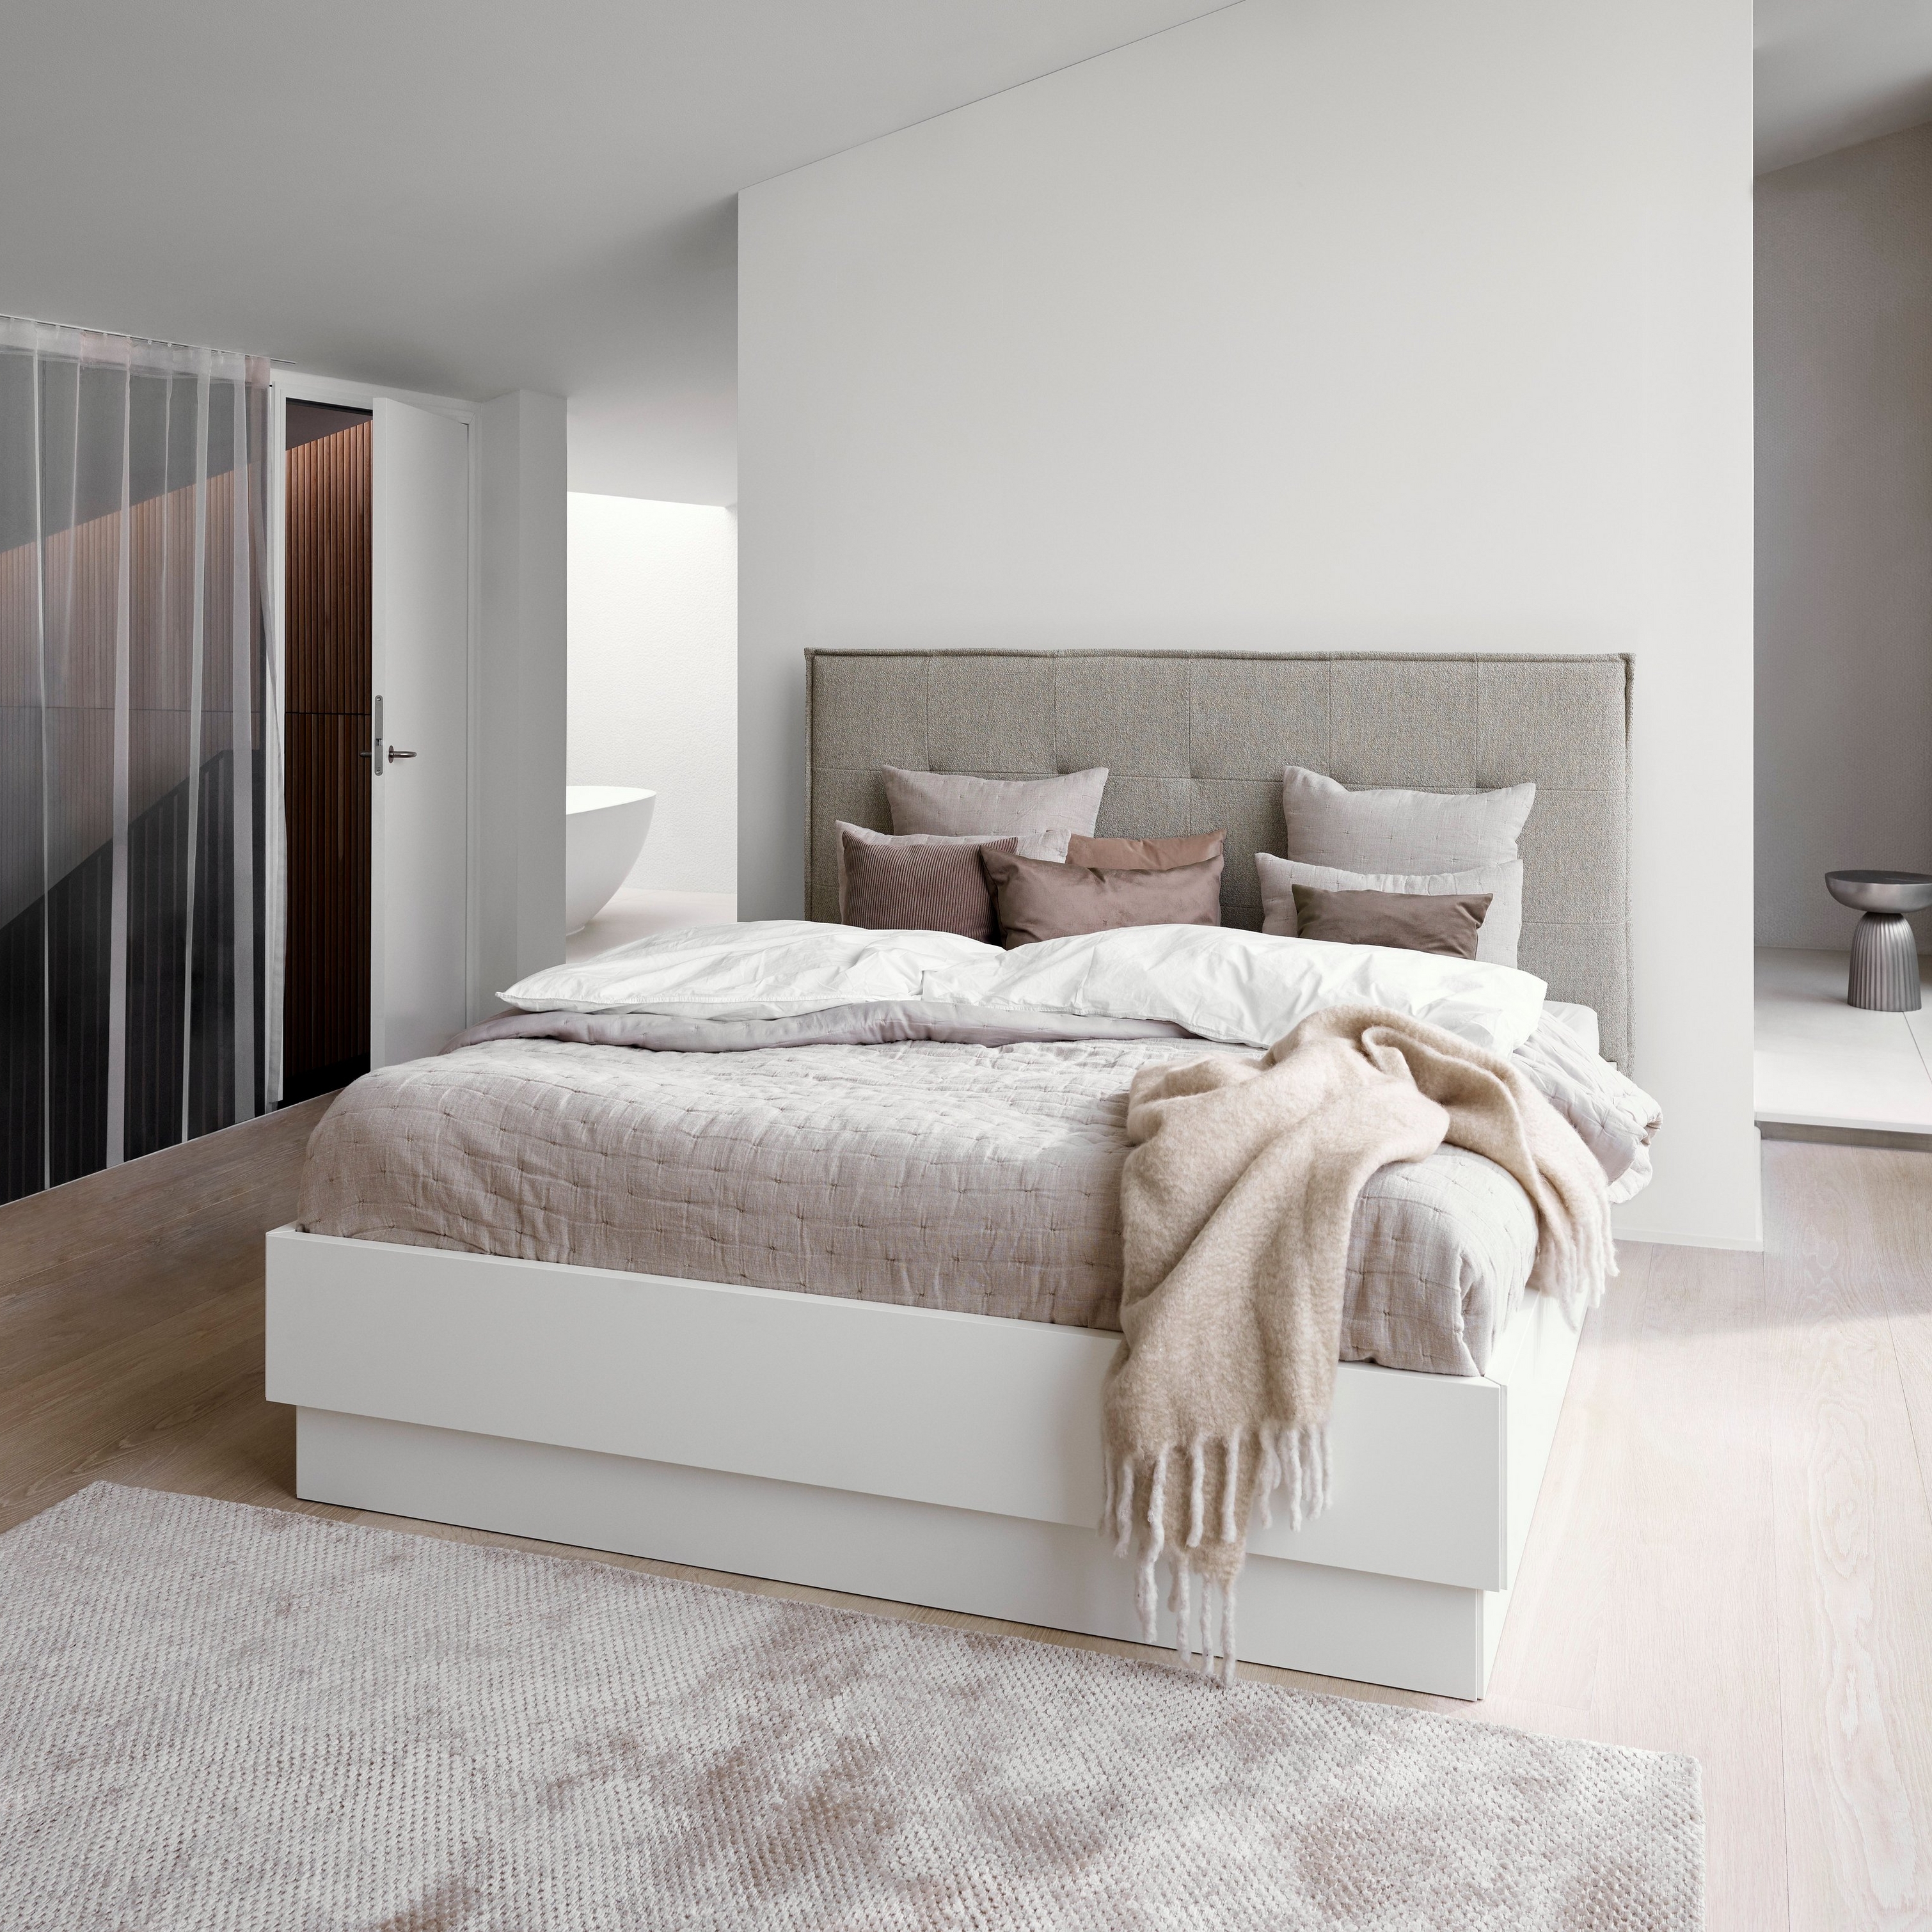 Minimalistisches Schlafzimmer mit einem grauen gepolsterten Bett, weißer Bettwäsche und einer strukturierten beigen Decke.